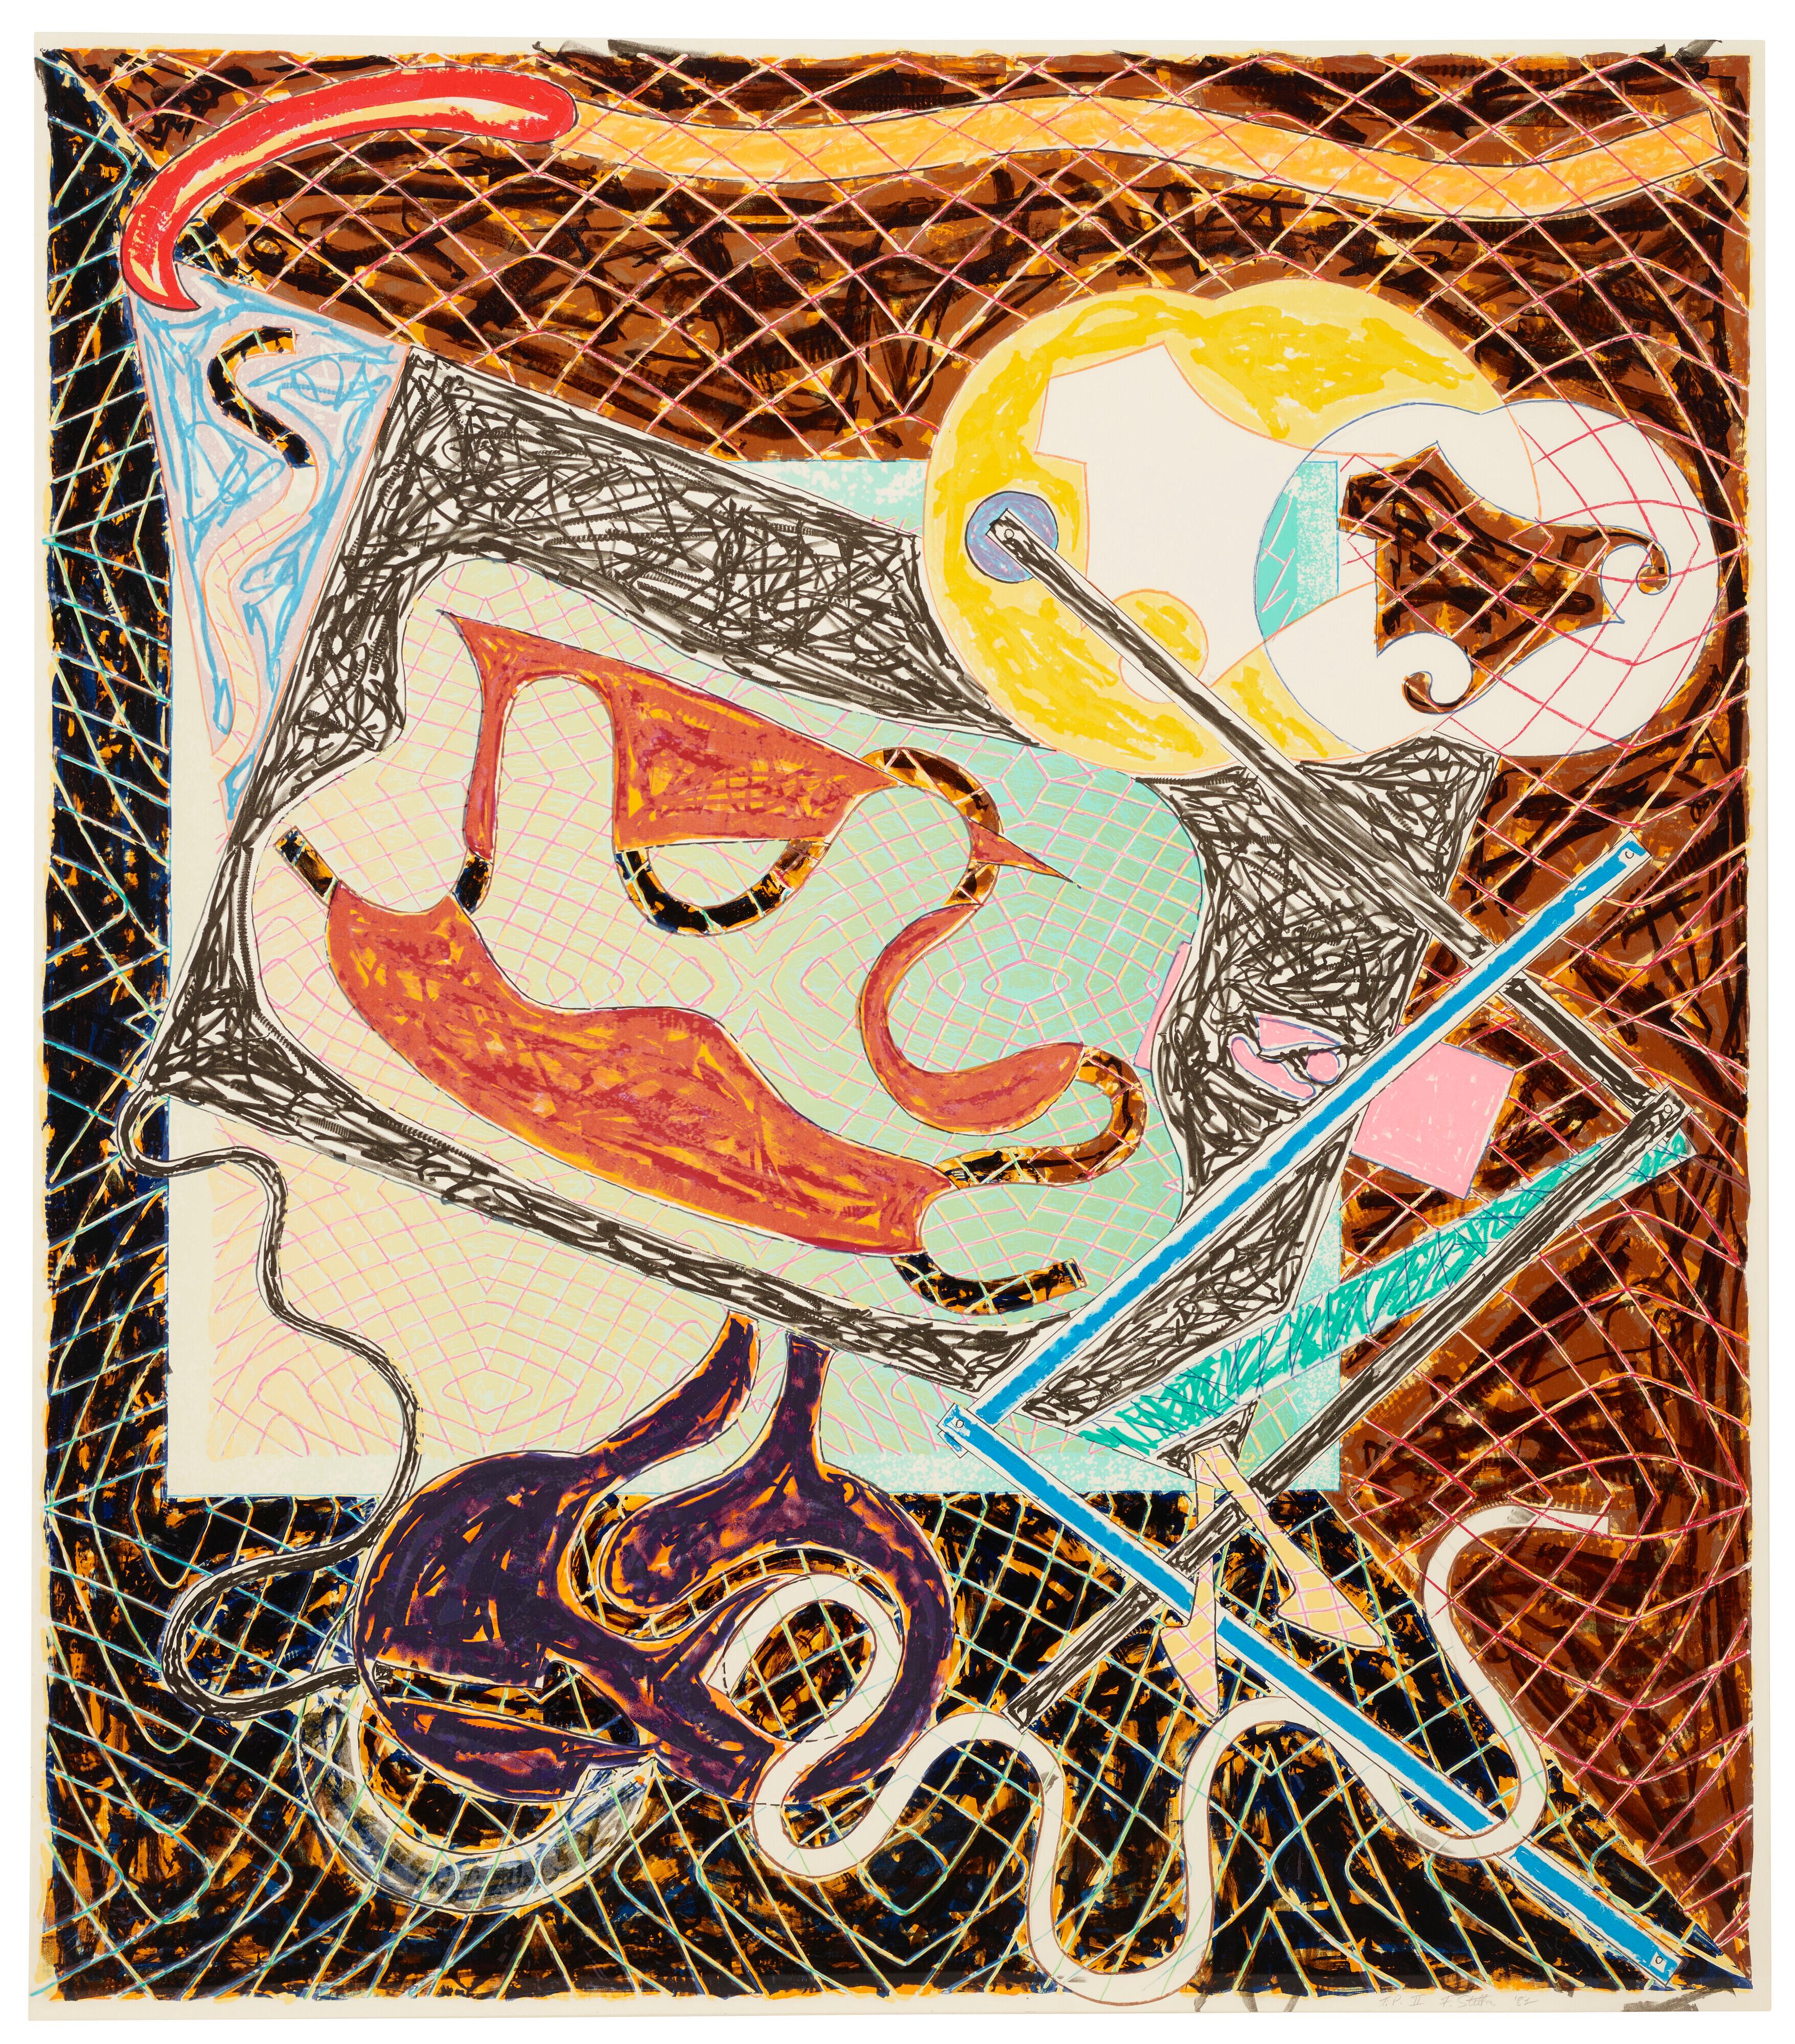 FRANK STELLA (1936-aujourd'hui)

Lithographie et sérigraphie en couleurs, sur papier Arches Cover, 1982, signée et datée au crayon, numérotée 'AT&T'. II" (altéré de "A.P." à "T.P.", une des vingt épreuves d'artiste, l'édition était de 100), publié